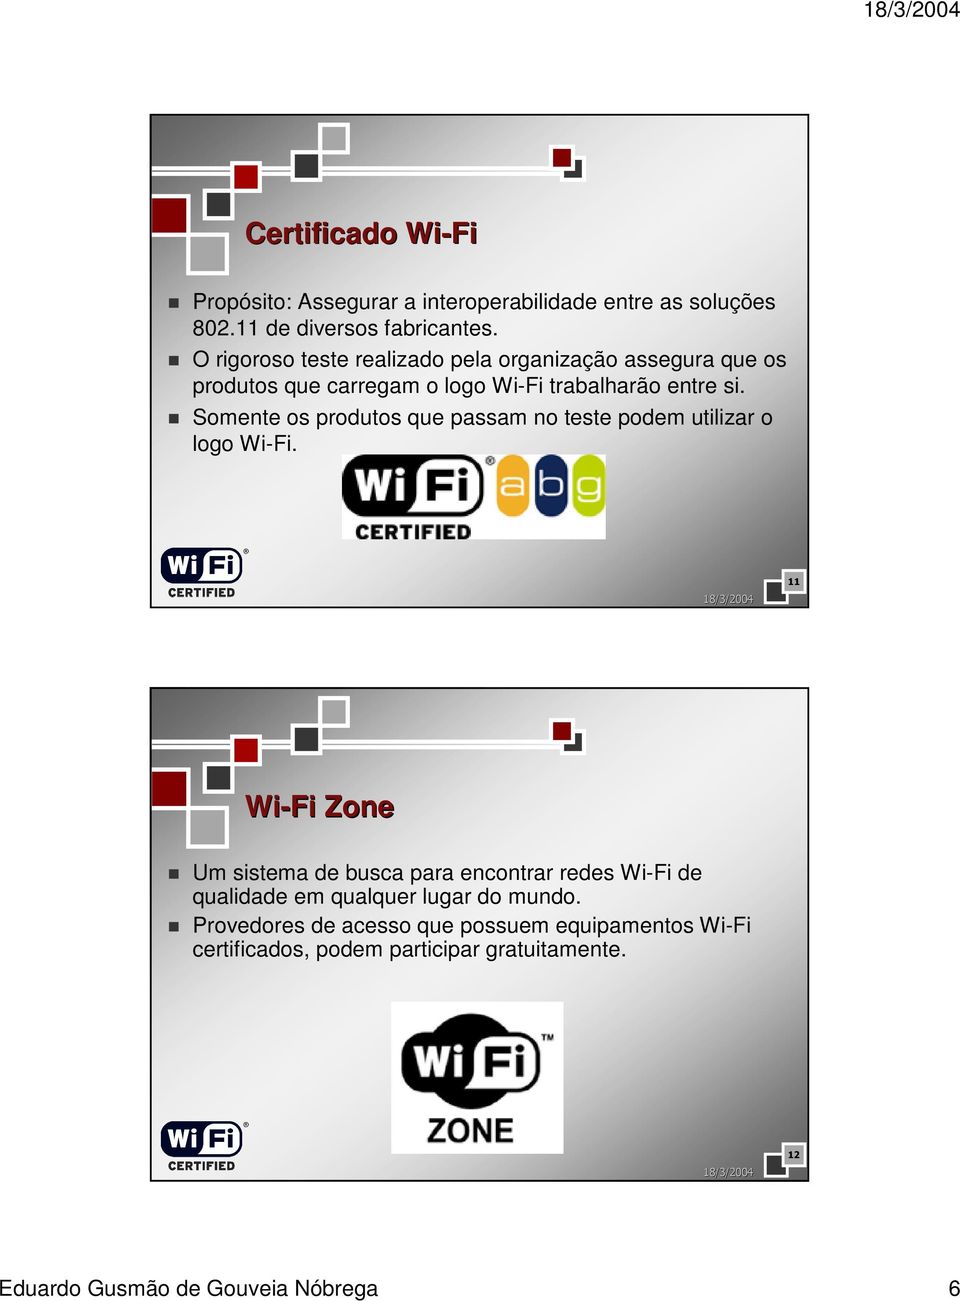 Somente os produtos que passam no teste podem utilizar o logo Wi-Fi.